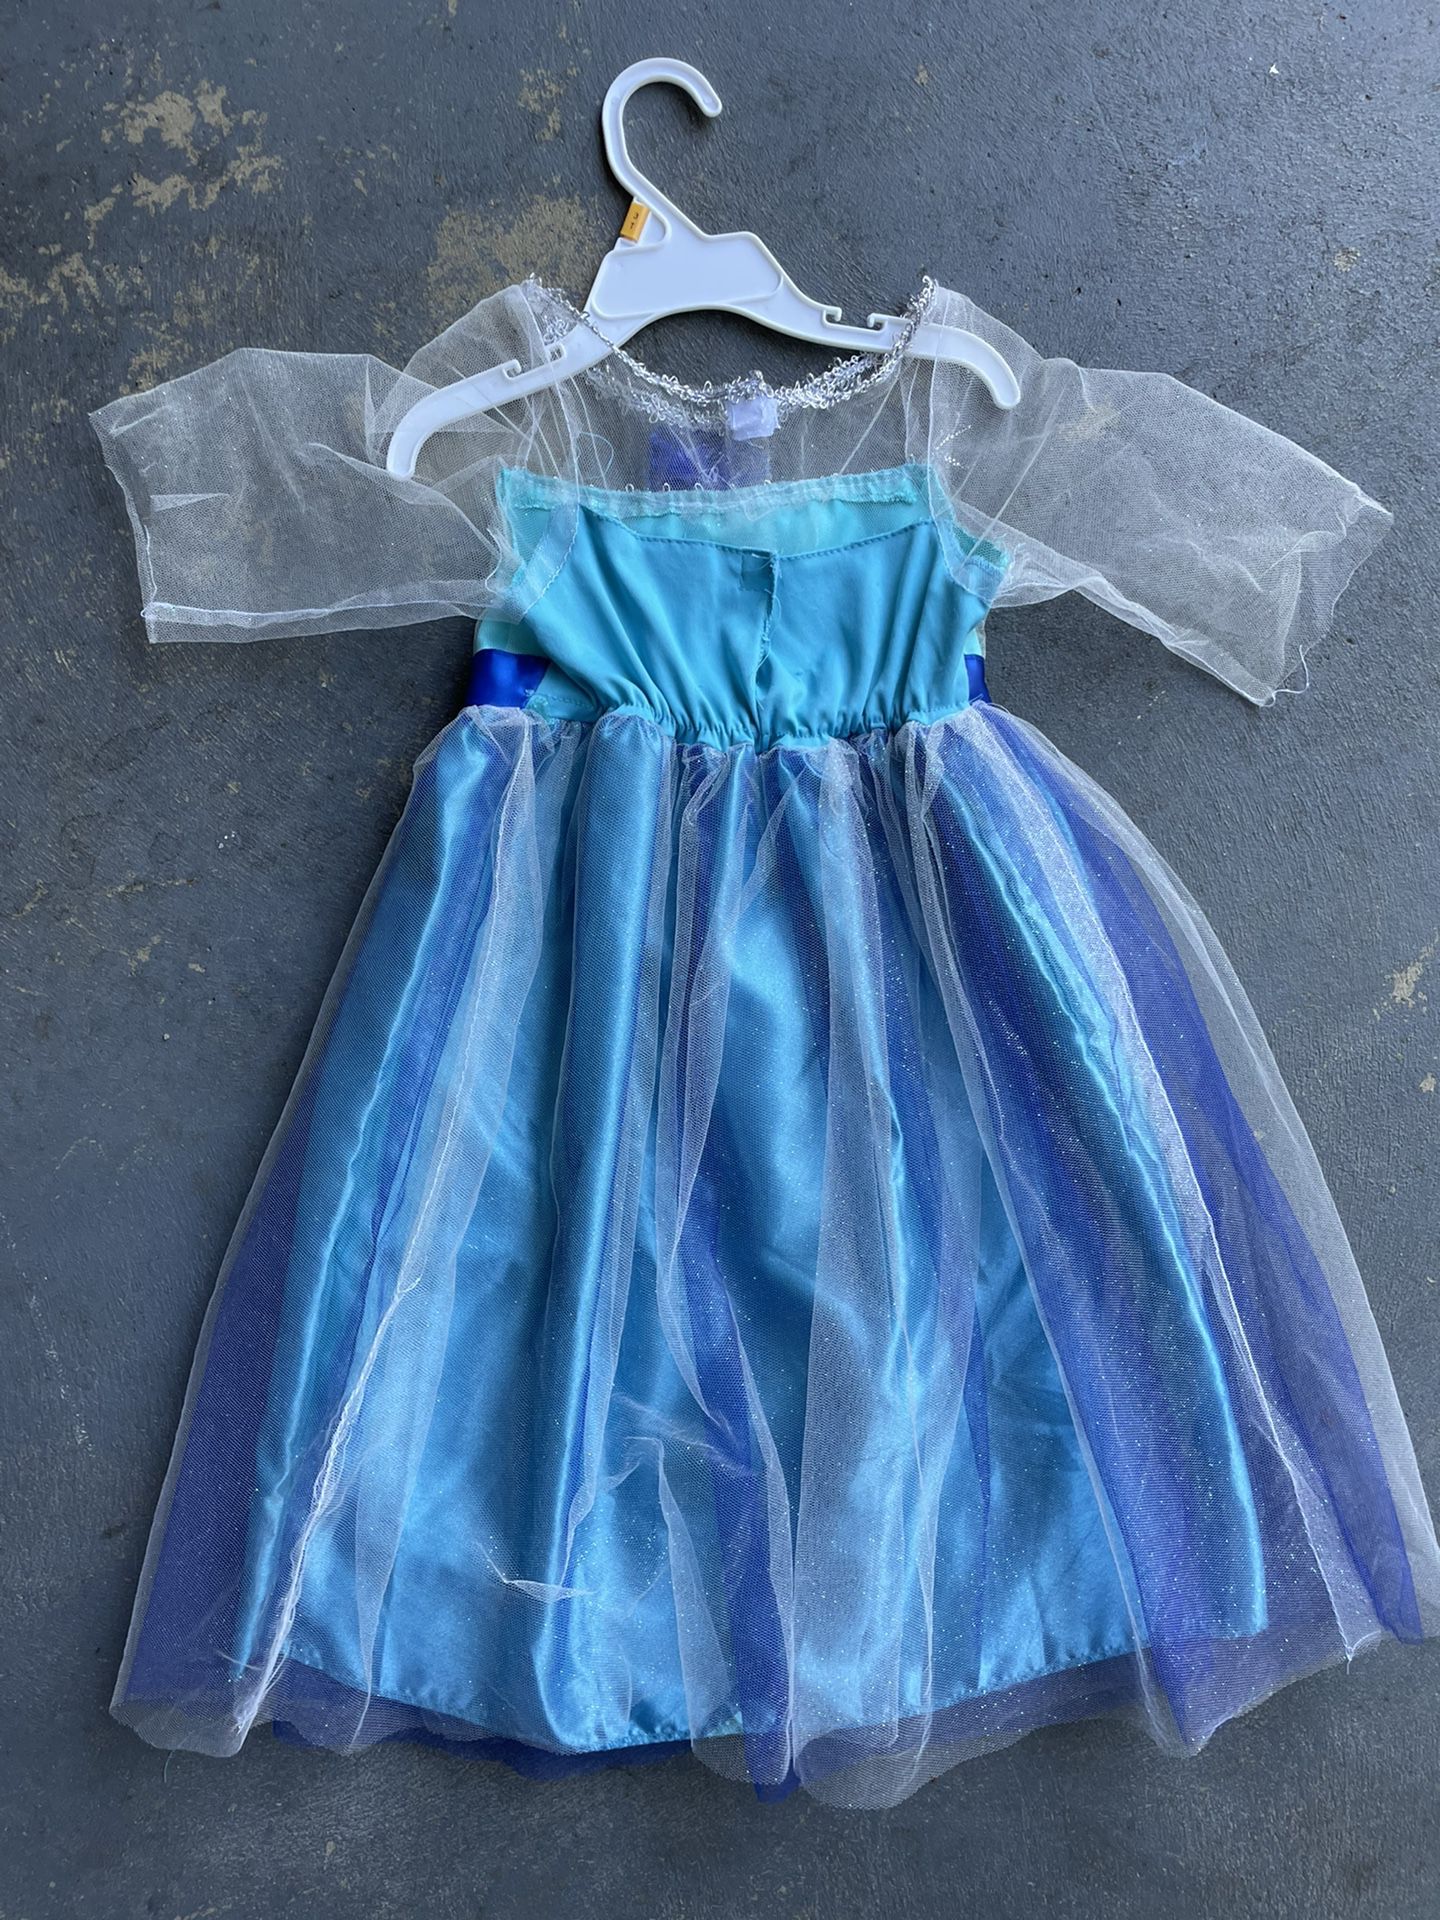 FROZEN Elsa Dress Costume, 3-5yo